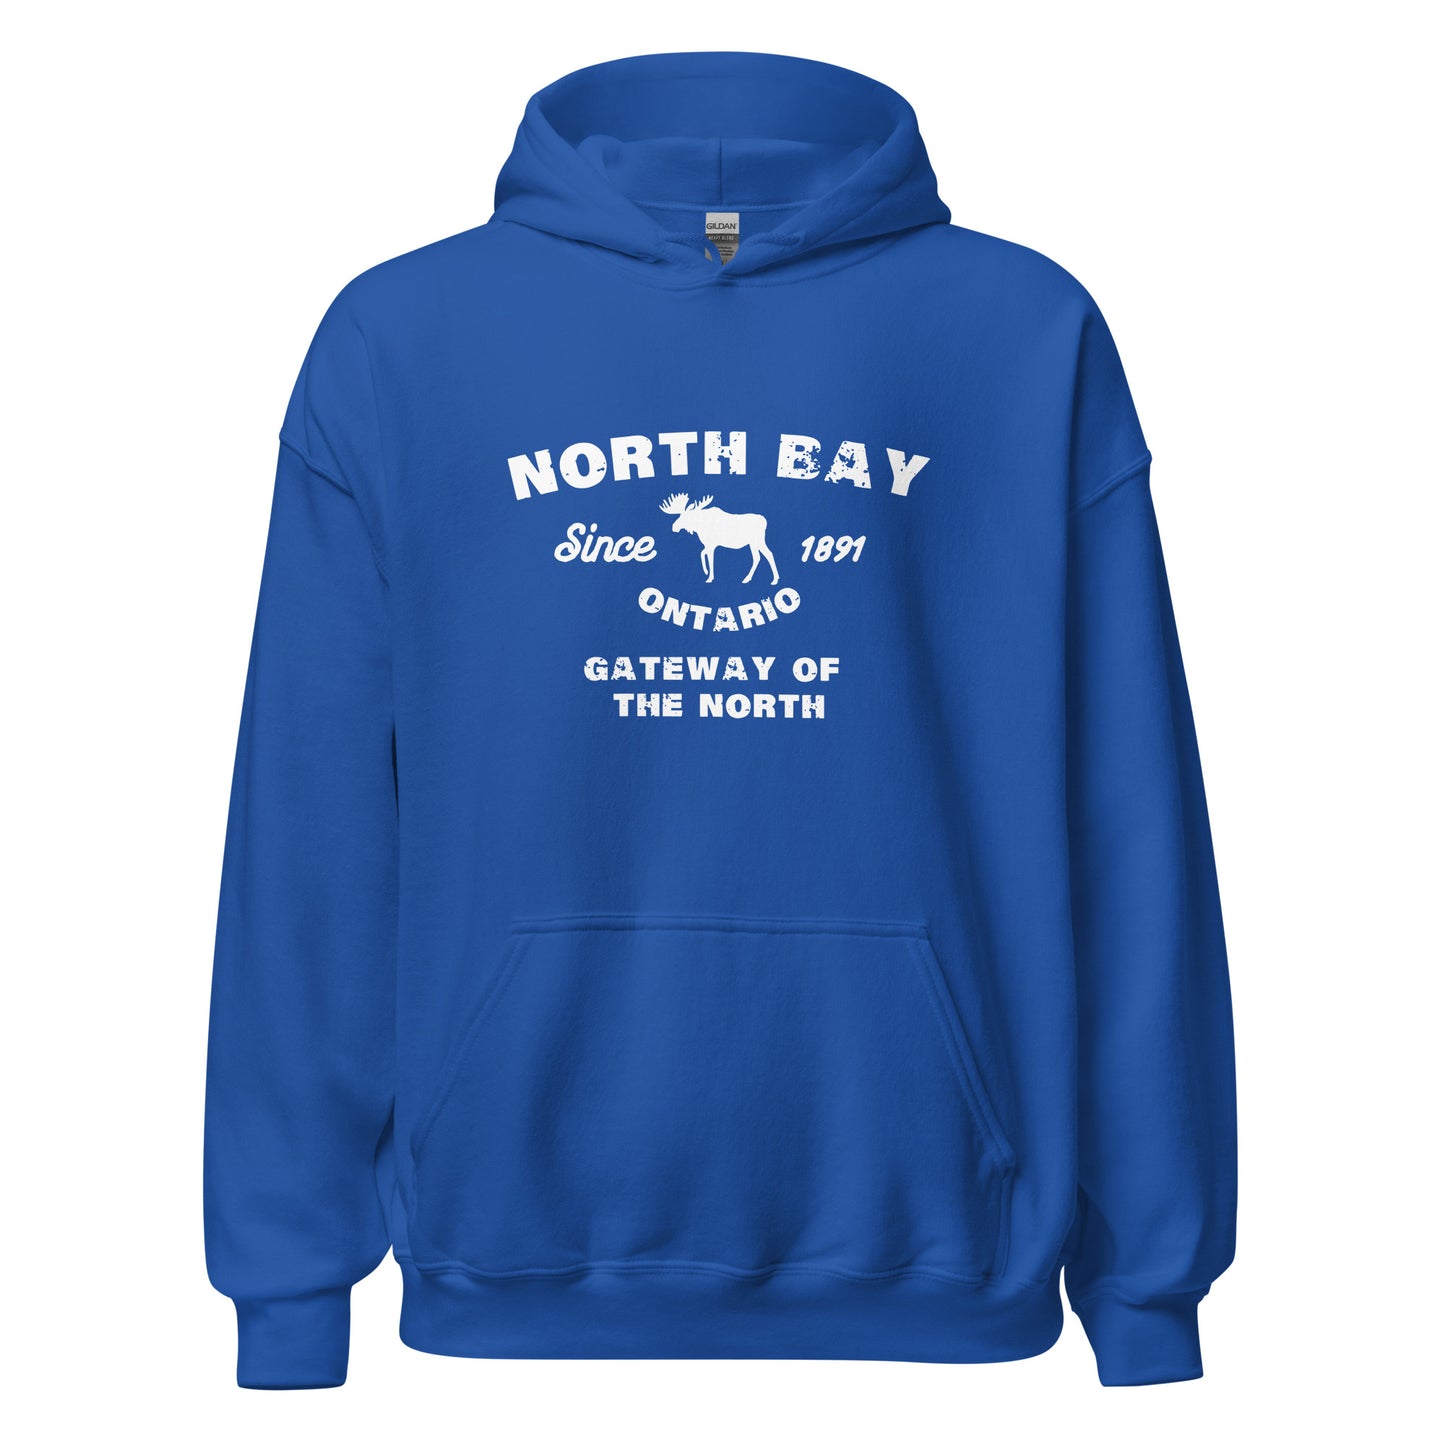 Canadian City Hoodie, North Bay, Ontario, Moose Design, Gateway of the North, Men's Hoodie